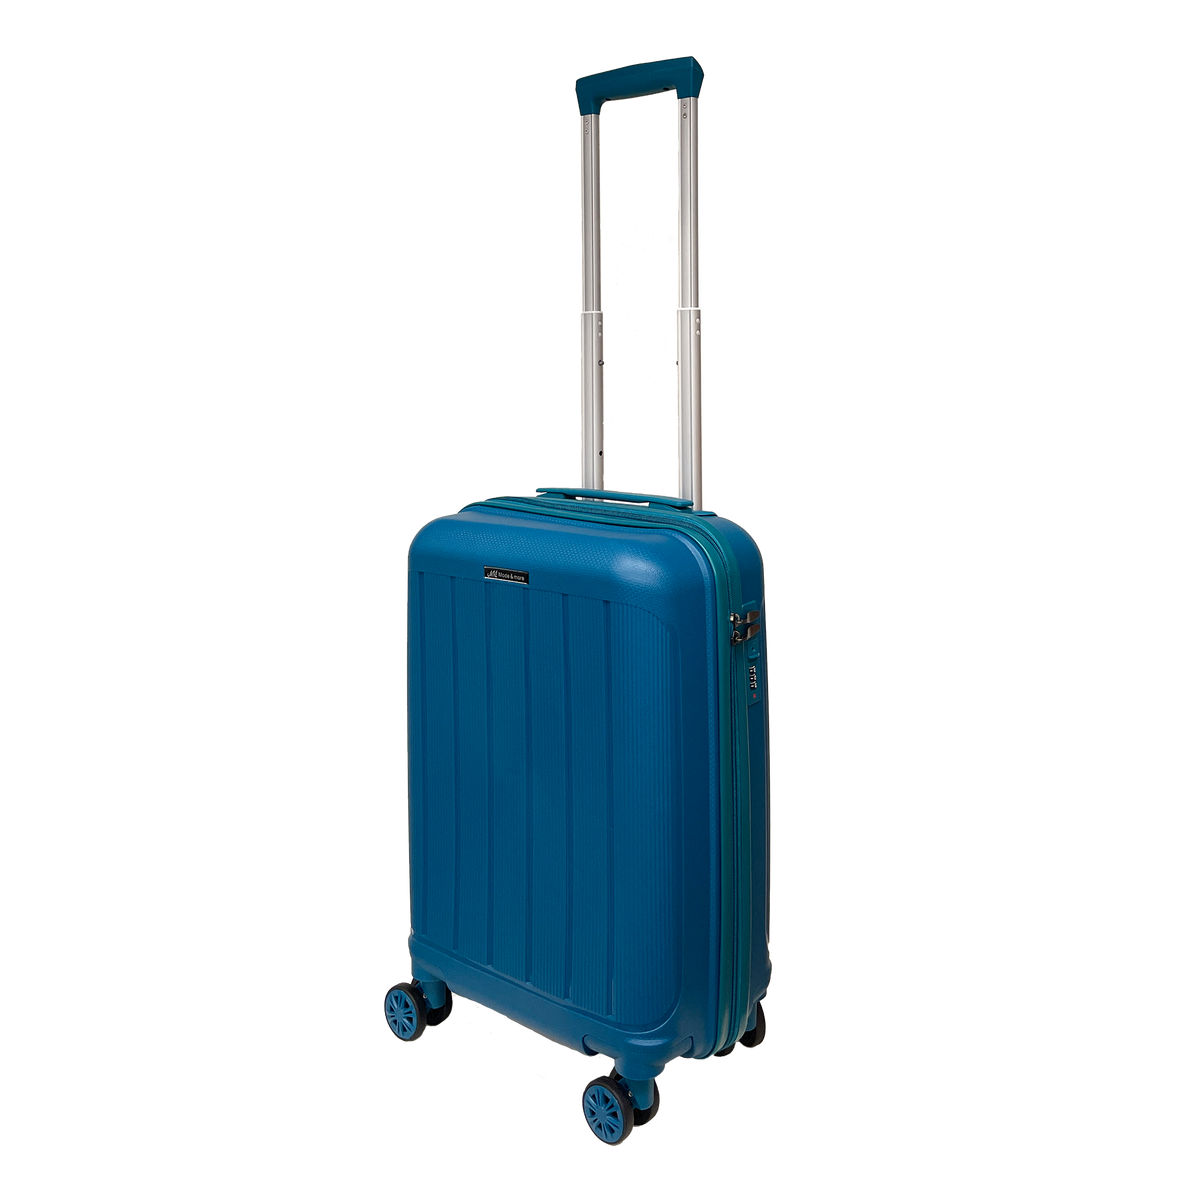 Kézipoggyász, könnyű polipropilénből készült puha bőrönd: 55x36x25 cm méretű, TSA lakattal, magas minőségű és rendkívül könnyű